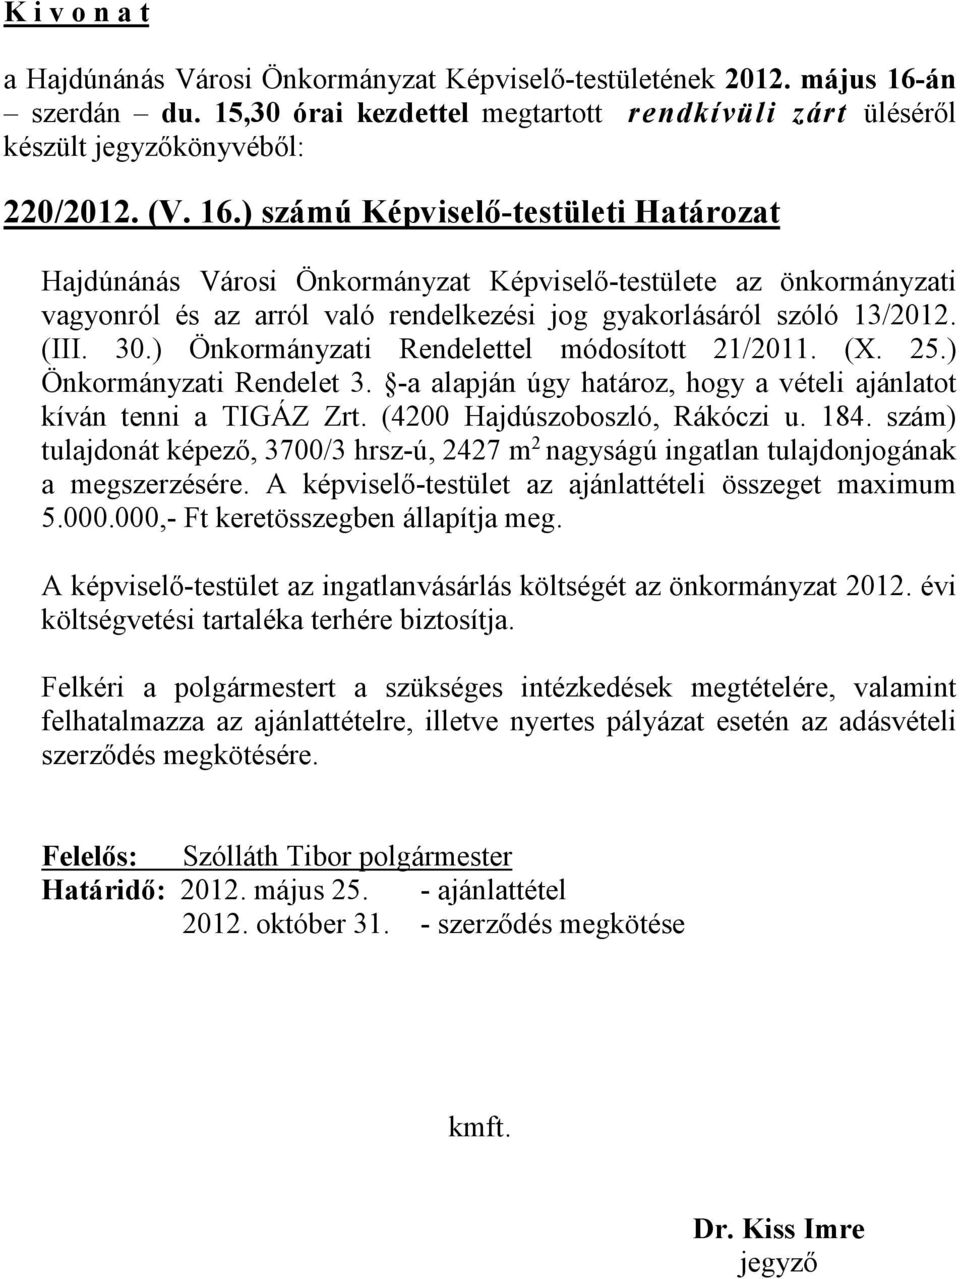 ) számú Képviselő-testületi Határozat Hajdúnánás Városi Önkormányzat Képviselő-testülete az önkormányzati vagyonról és az arról való rendelkezési jog gyakorlásáról szóló 13/2012. (III. 30.